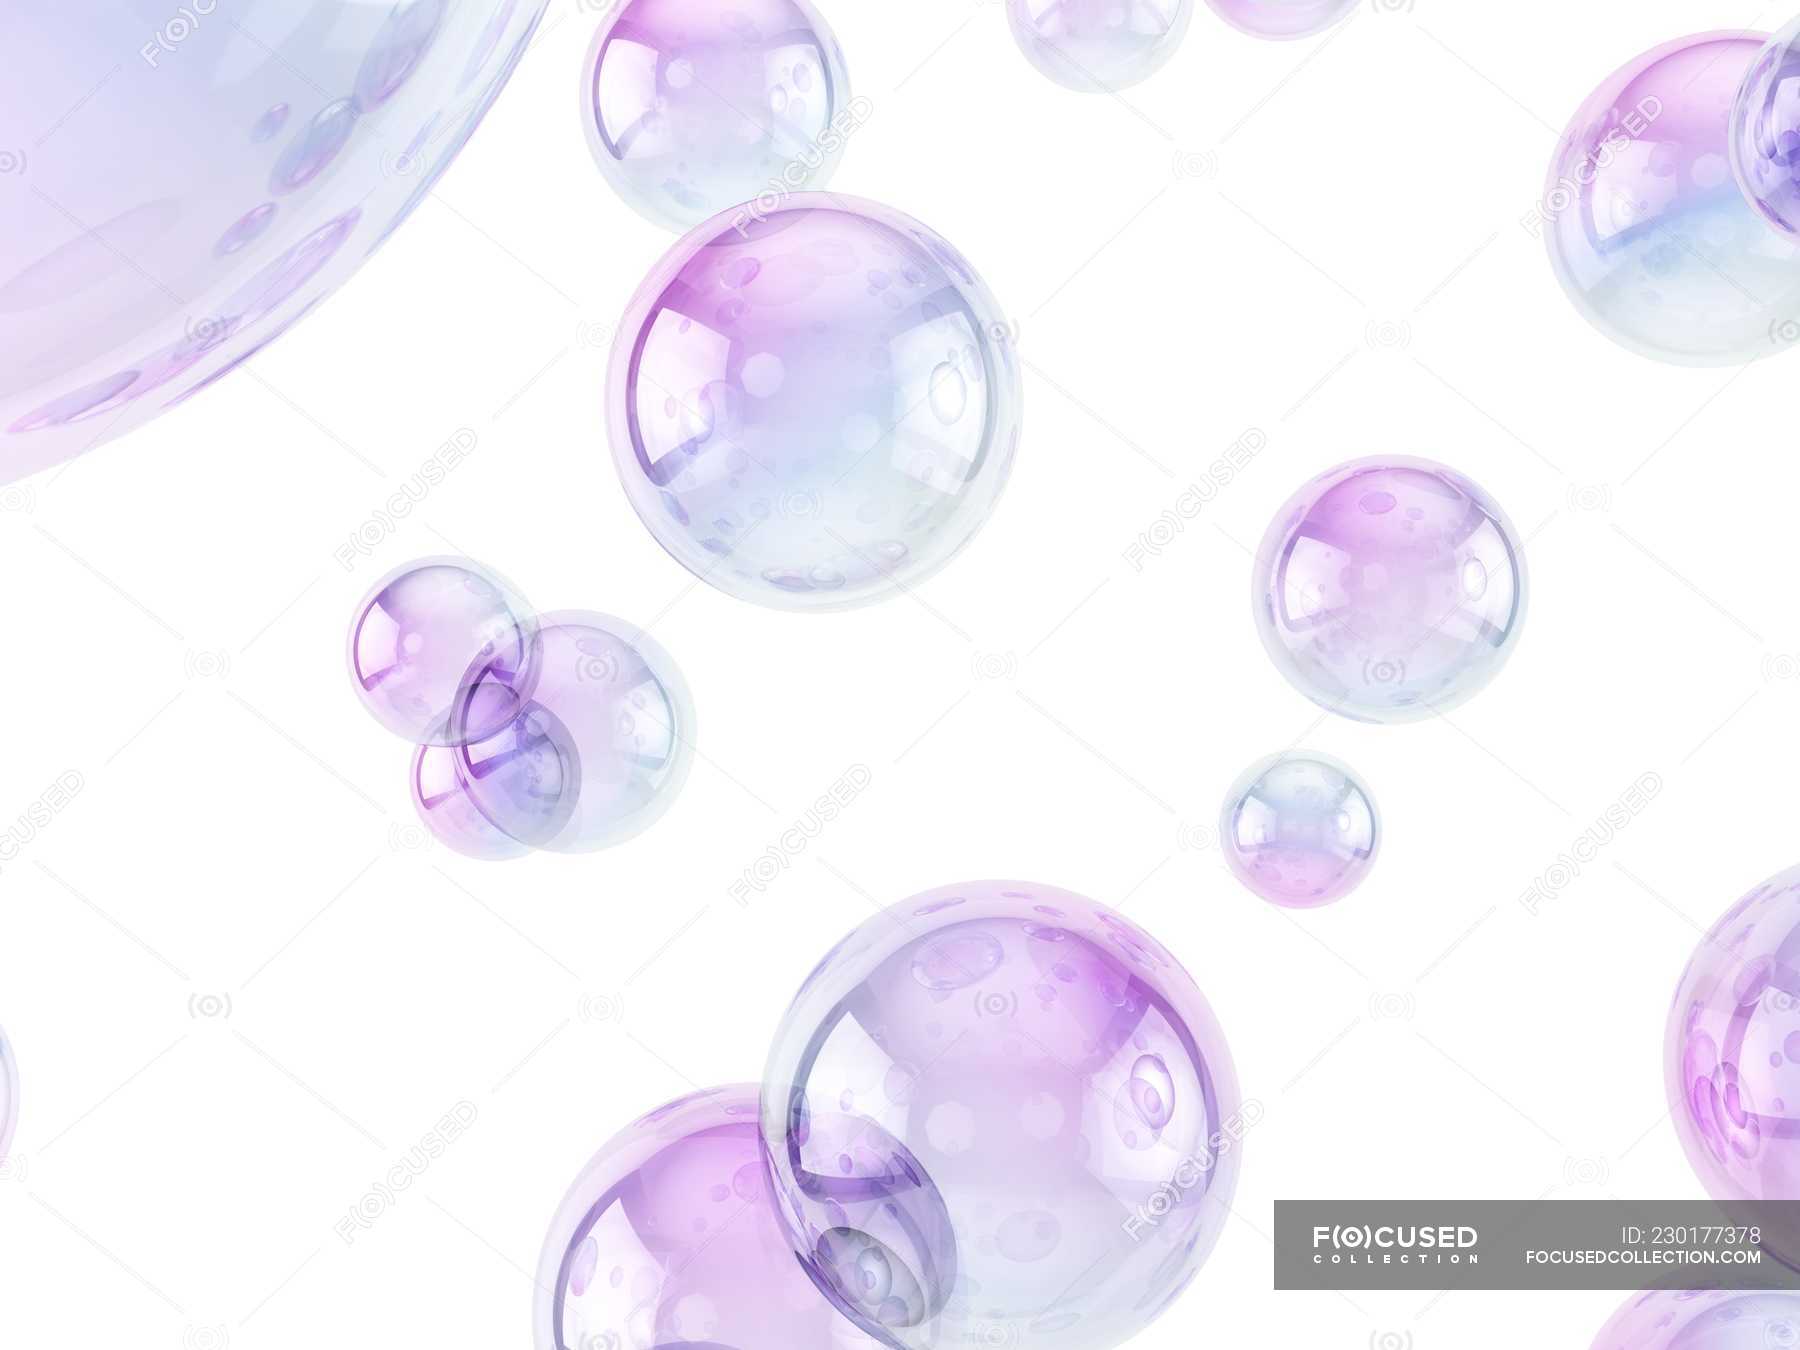 Hình nền Bong bóng màu tím vô cùng độc đáo, là sự kết hợp hoàn hảo giữa màu sắc và ánh sáng. Bubbles nổi bật và táo bạo trong không gian tím đậm, mang lại cảm giác tươi mới và rực rỡ. Hãy để bộ hình nền Bubbles màu tím tạo ra sự bất ngờ và thú vị cho người xem, đồng thời truyền tải thông điệp về tính cách cá tính.